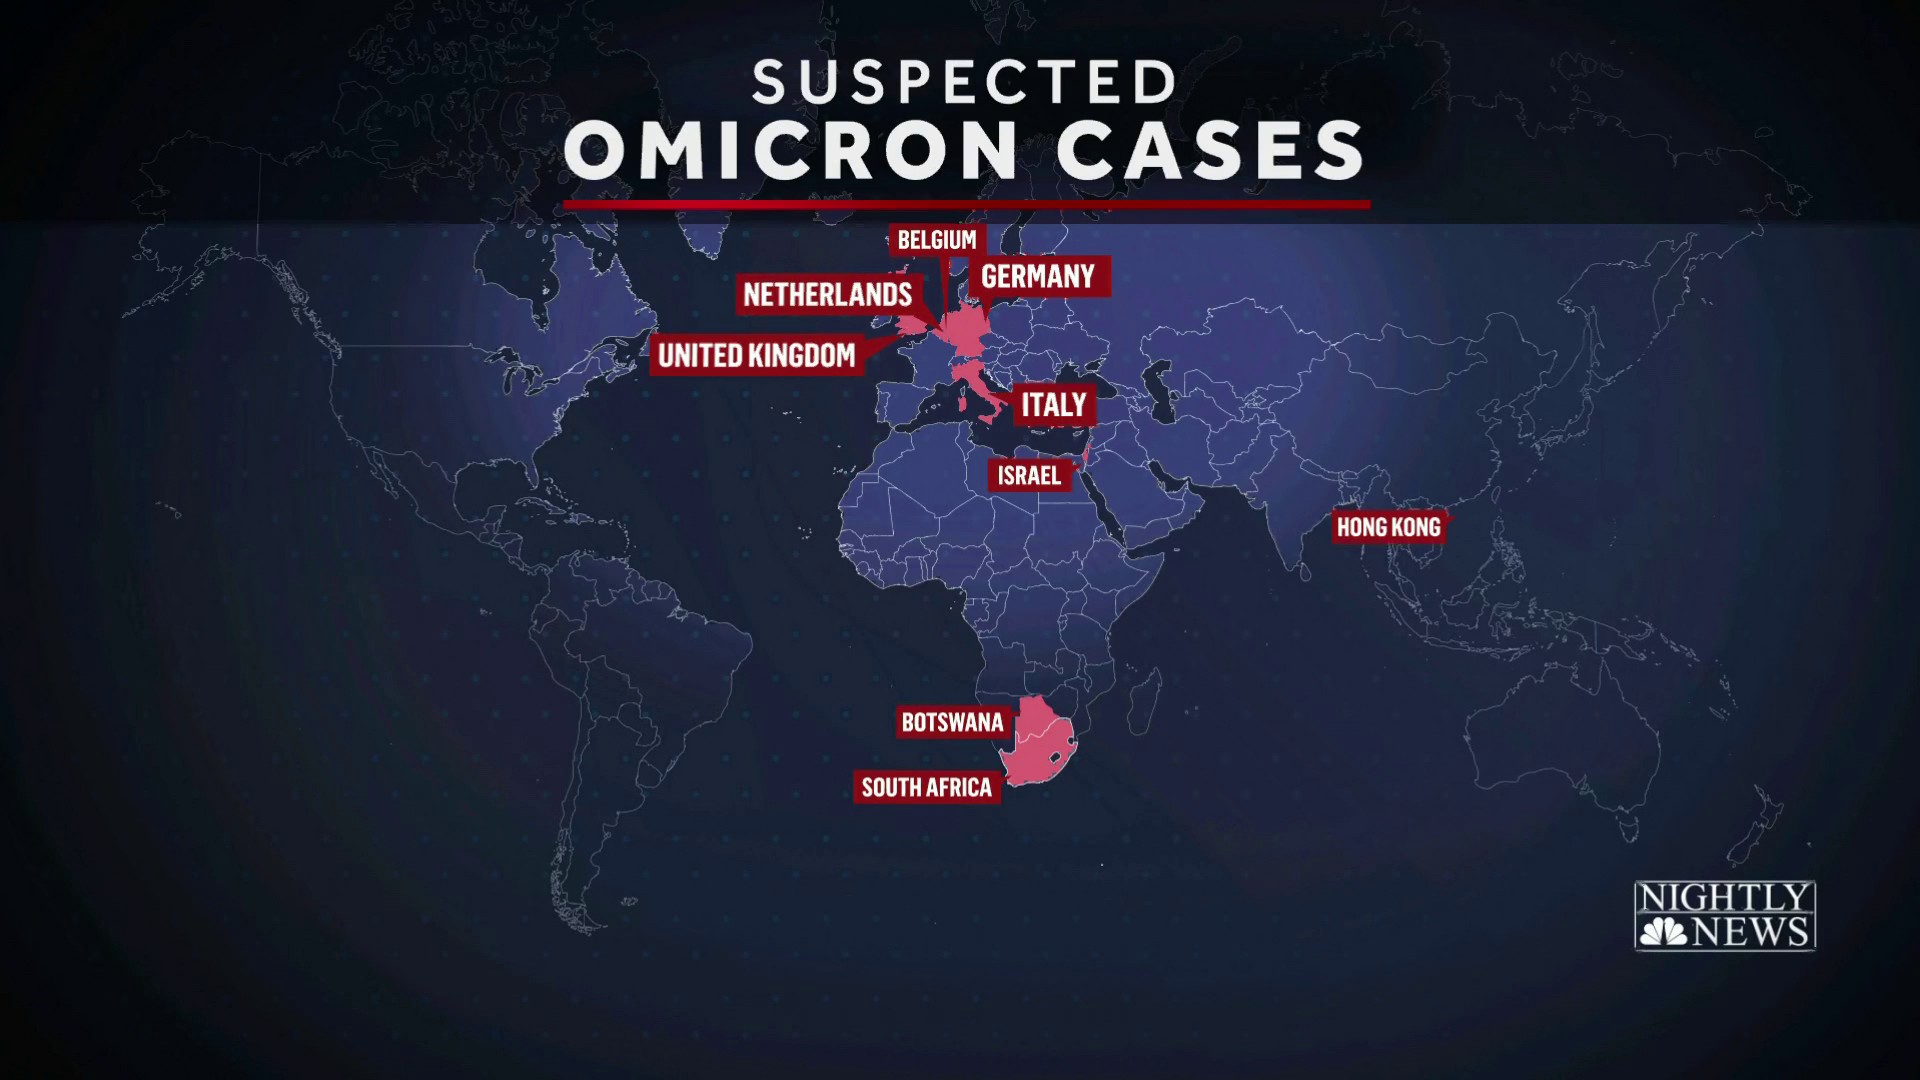 Omicron variant latest news